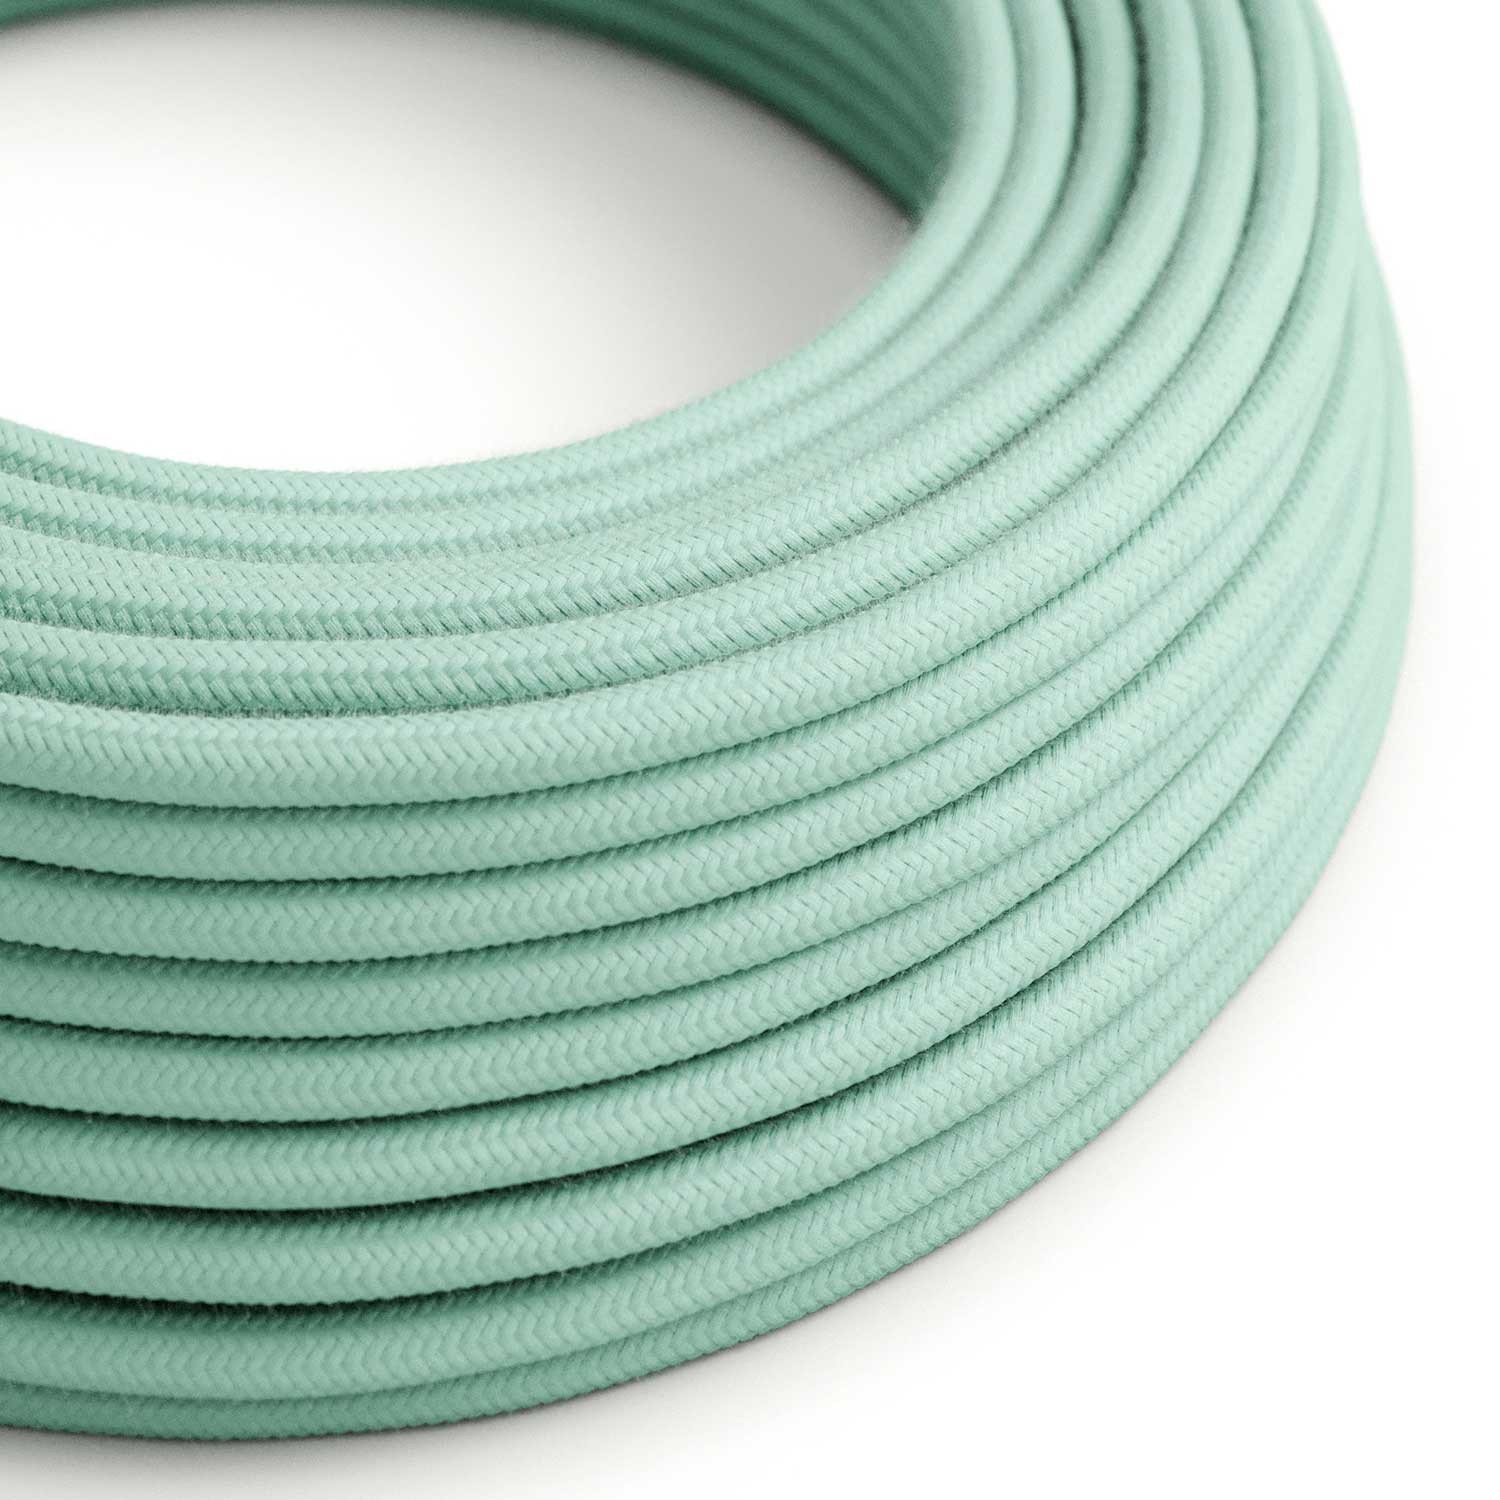 Textilkabel, mintgrün, aus Baumwolle - Das Original von Creative-Cables - RC34 rund 2x0.75mm / 3x0.75mm